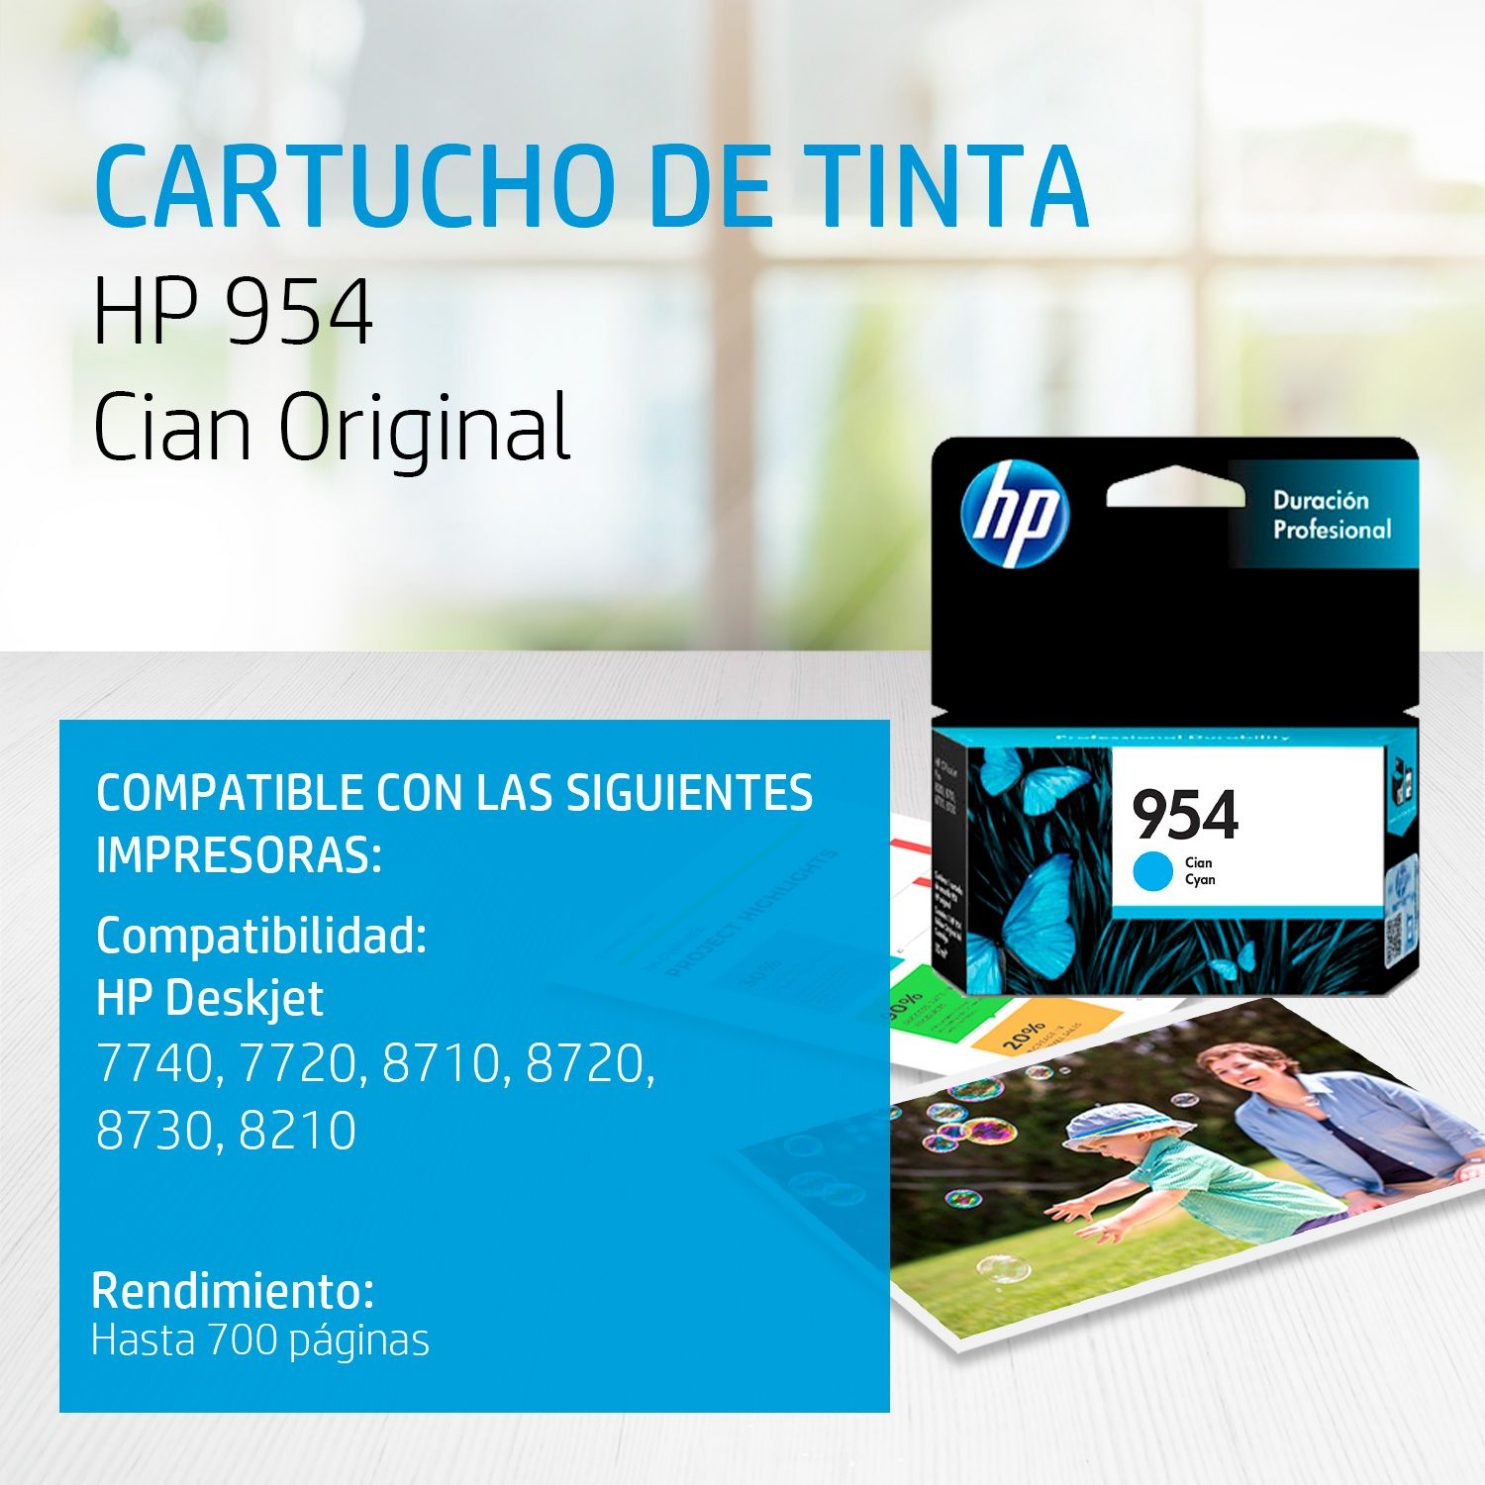 Cartucho de tinta HP 954 Cian (L0S50AL) OfficeJet 7740, 8710, 700 Pag.